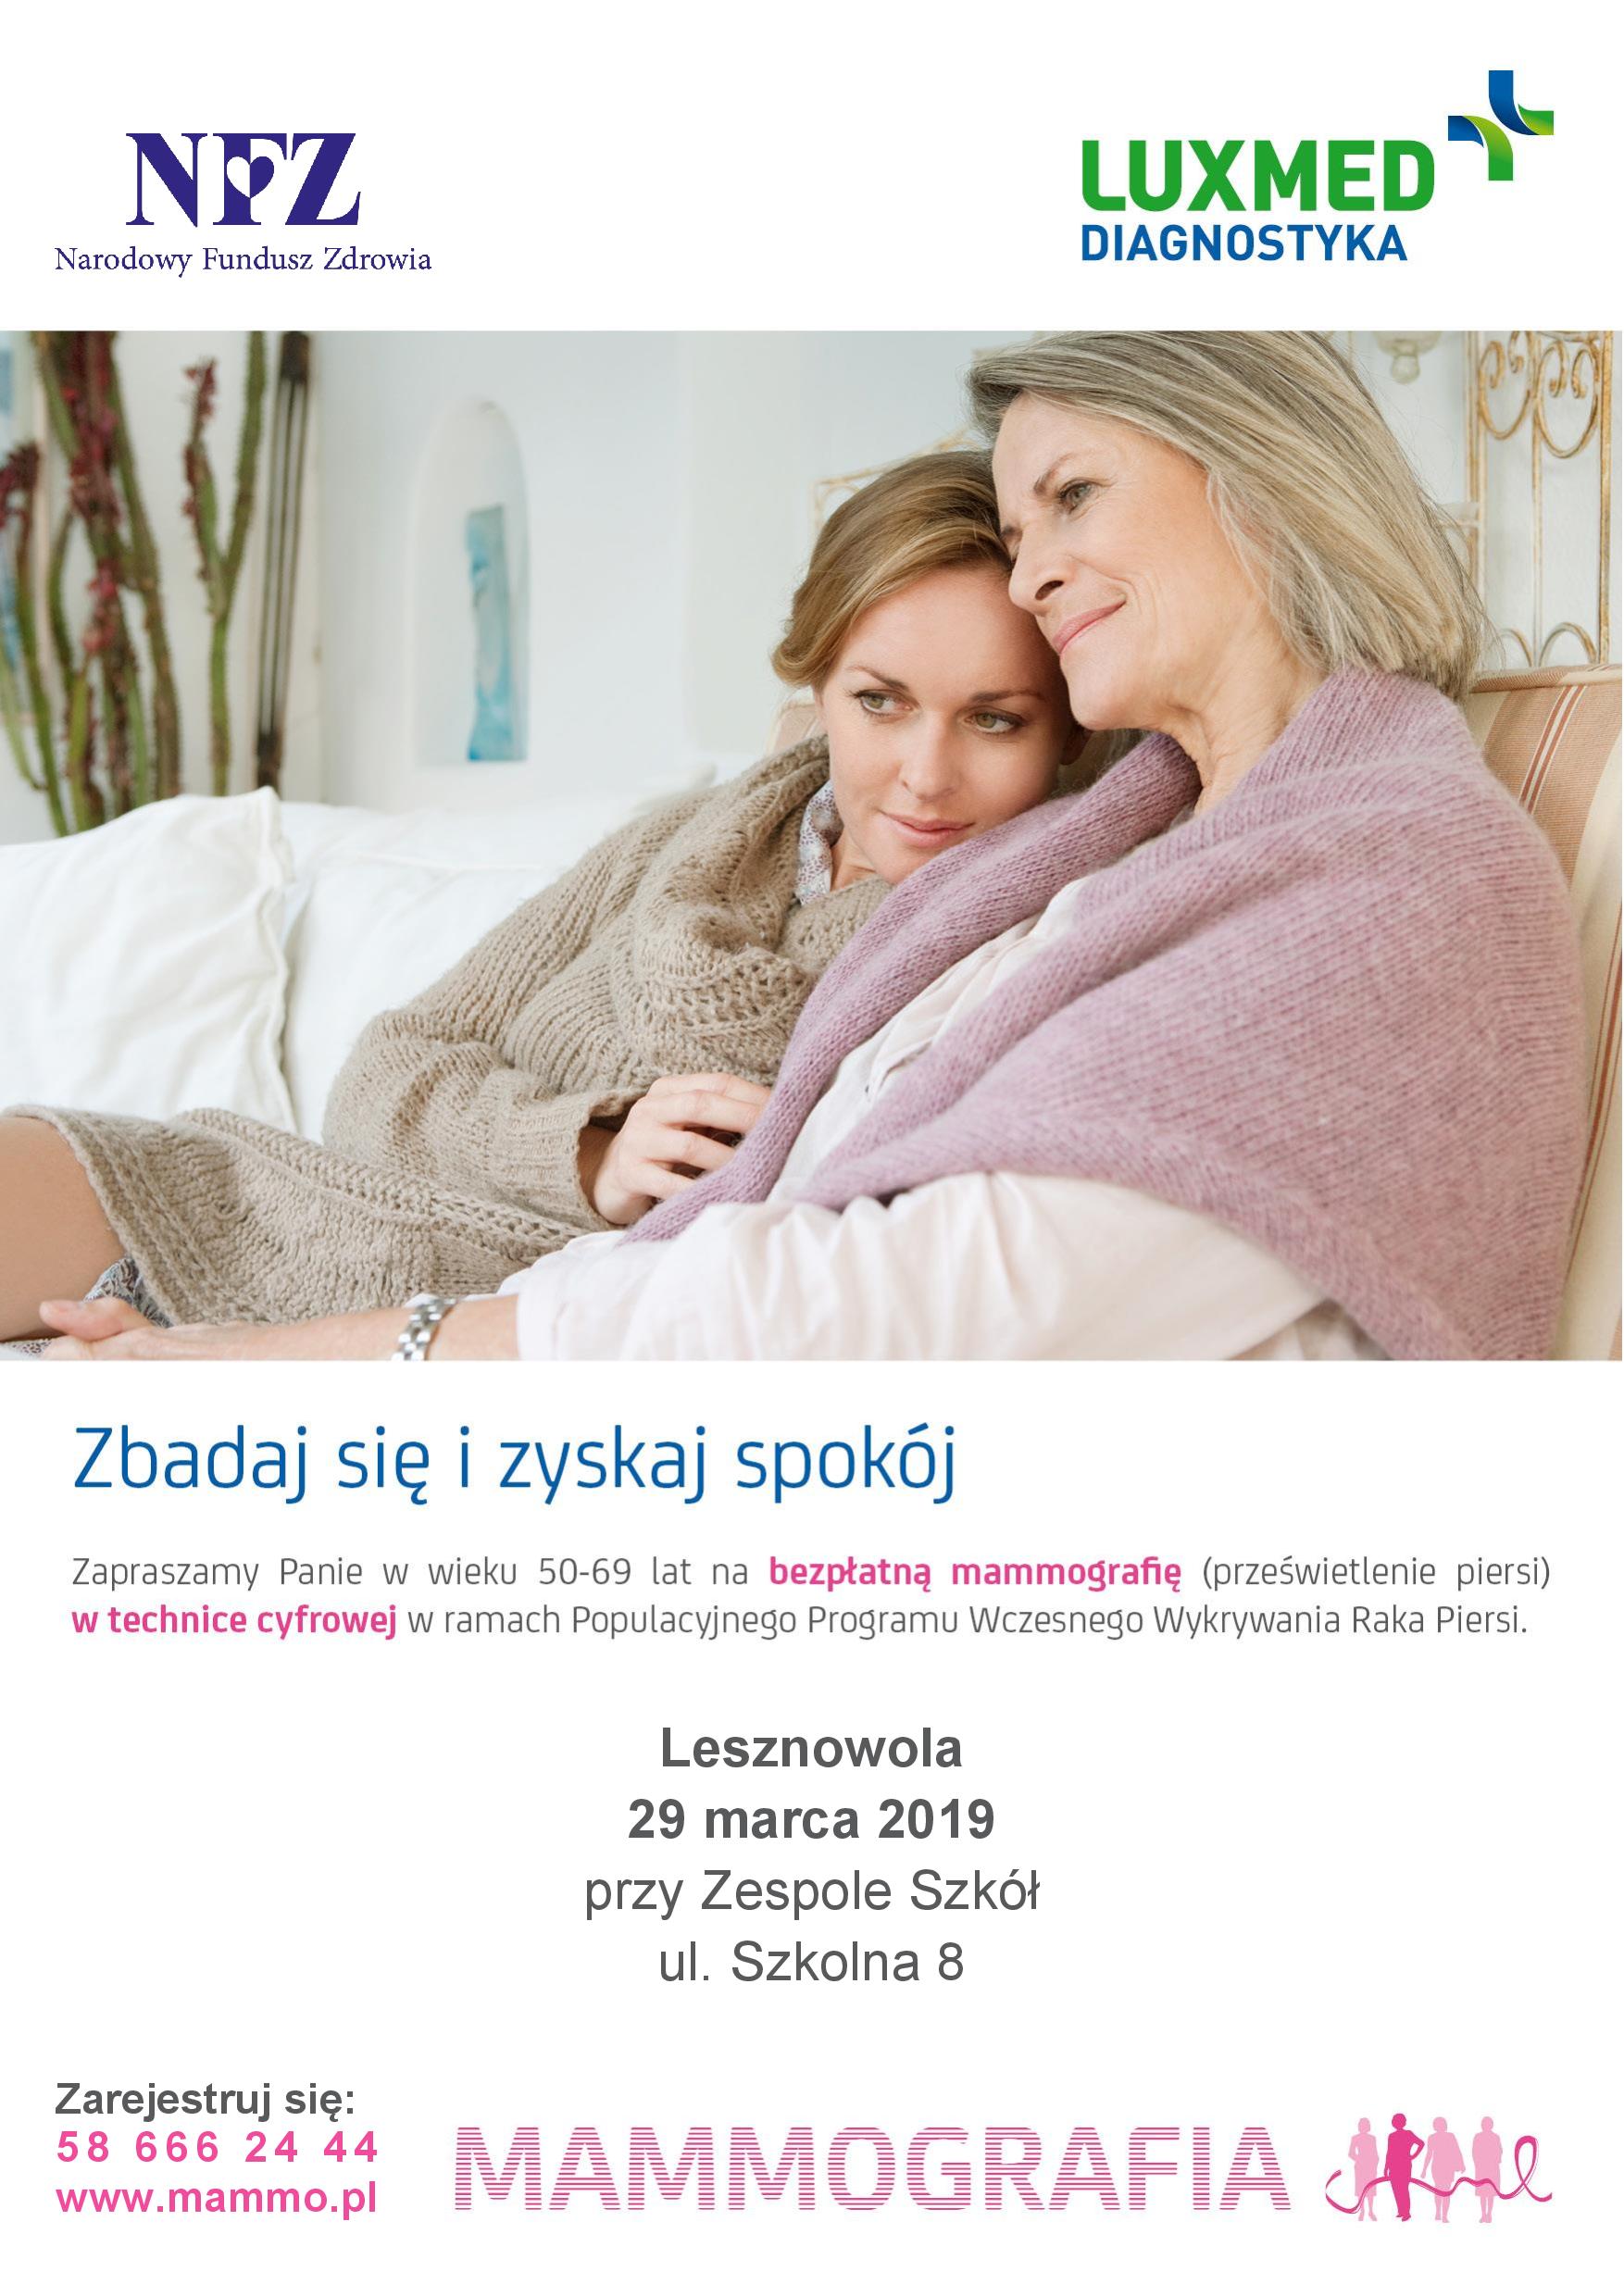 Bezpłatne badania mammograficzne dla kobiet w wieku 50-69 lat w marcu 2019 - Lesznowola